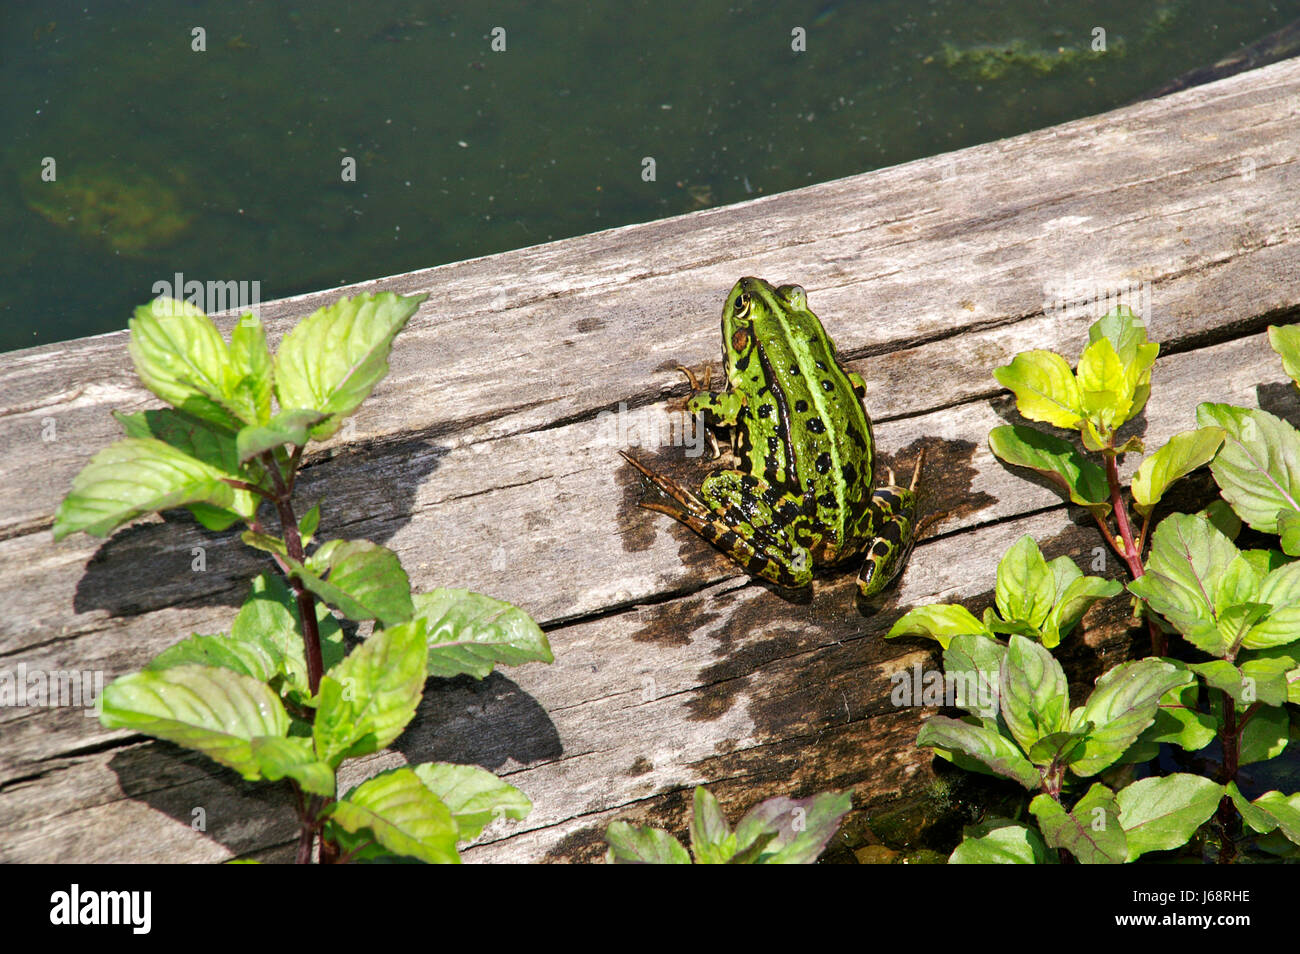 frog on wood Stock Photo